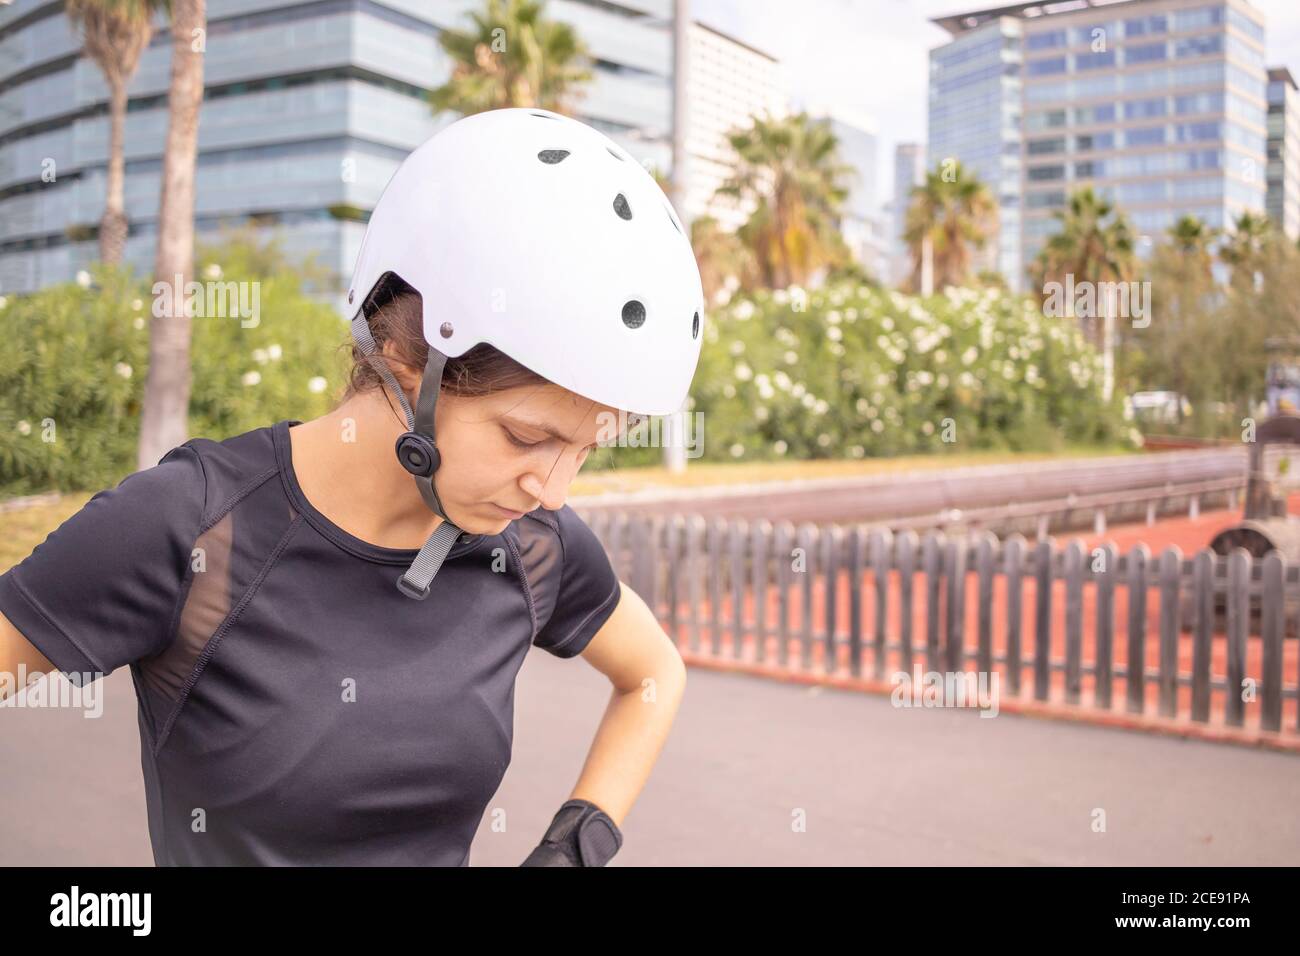 Sehr traurig nach Ausfall junge Roller Skater kaukasischen Frau in den weißen Helm und schwarze sportliche Kleidung, Skatepark, städtische Umwelt. Stockfoto